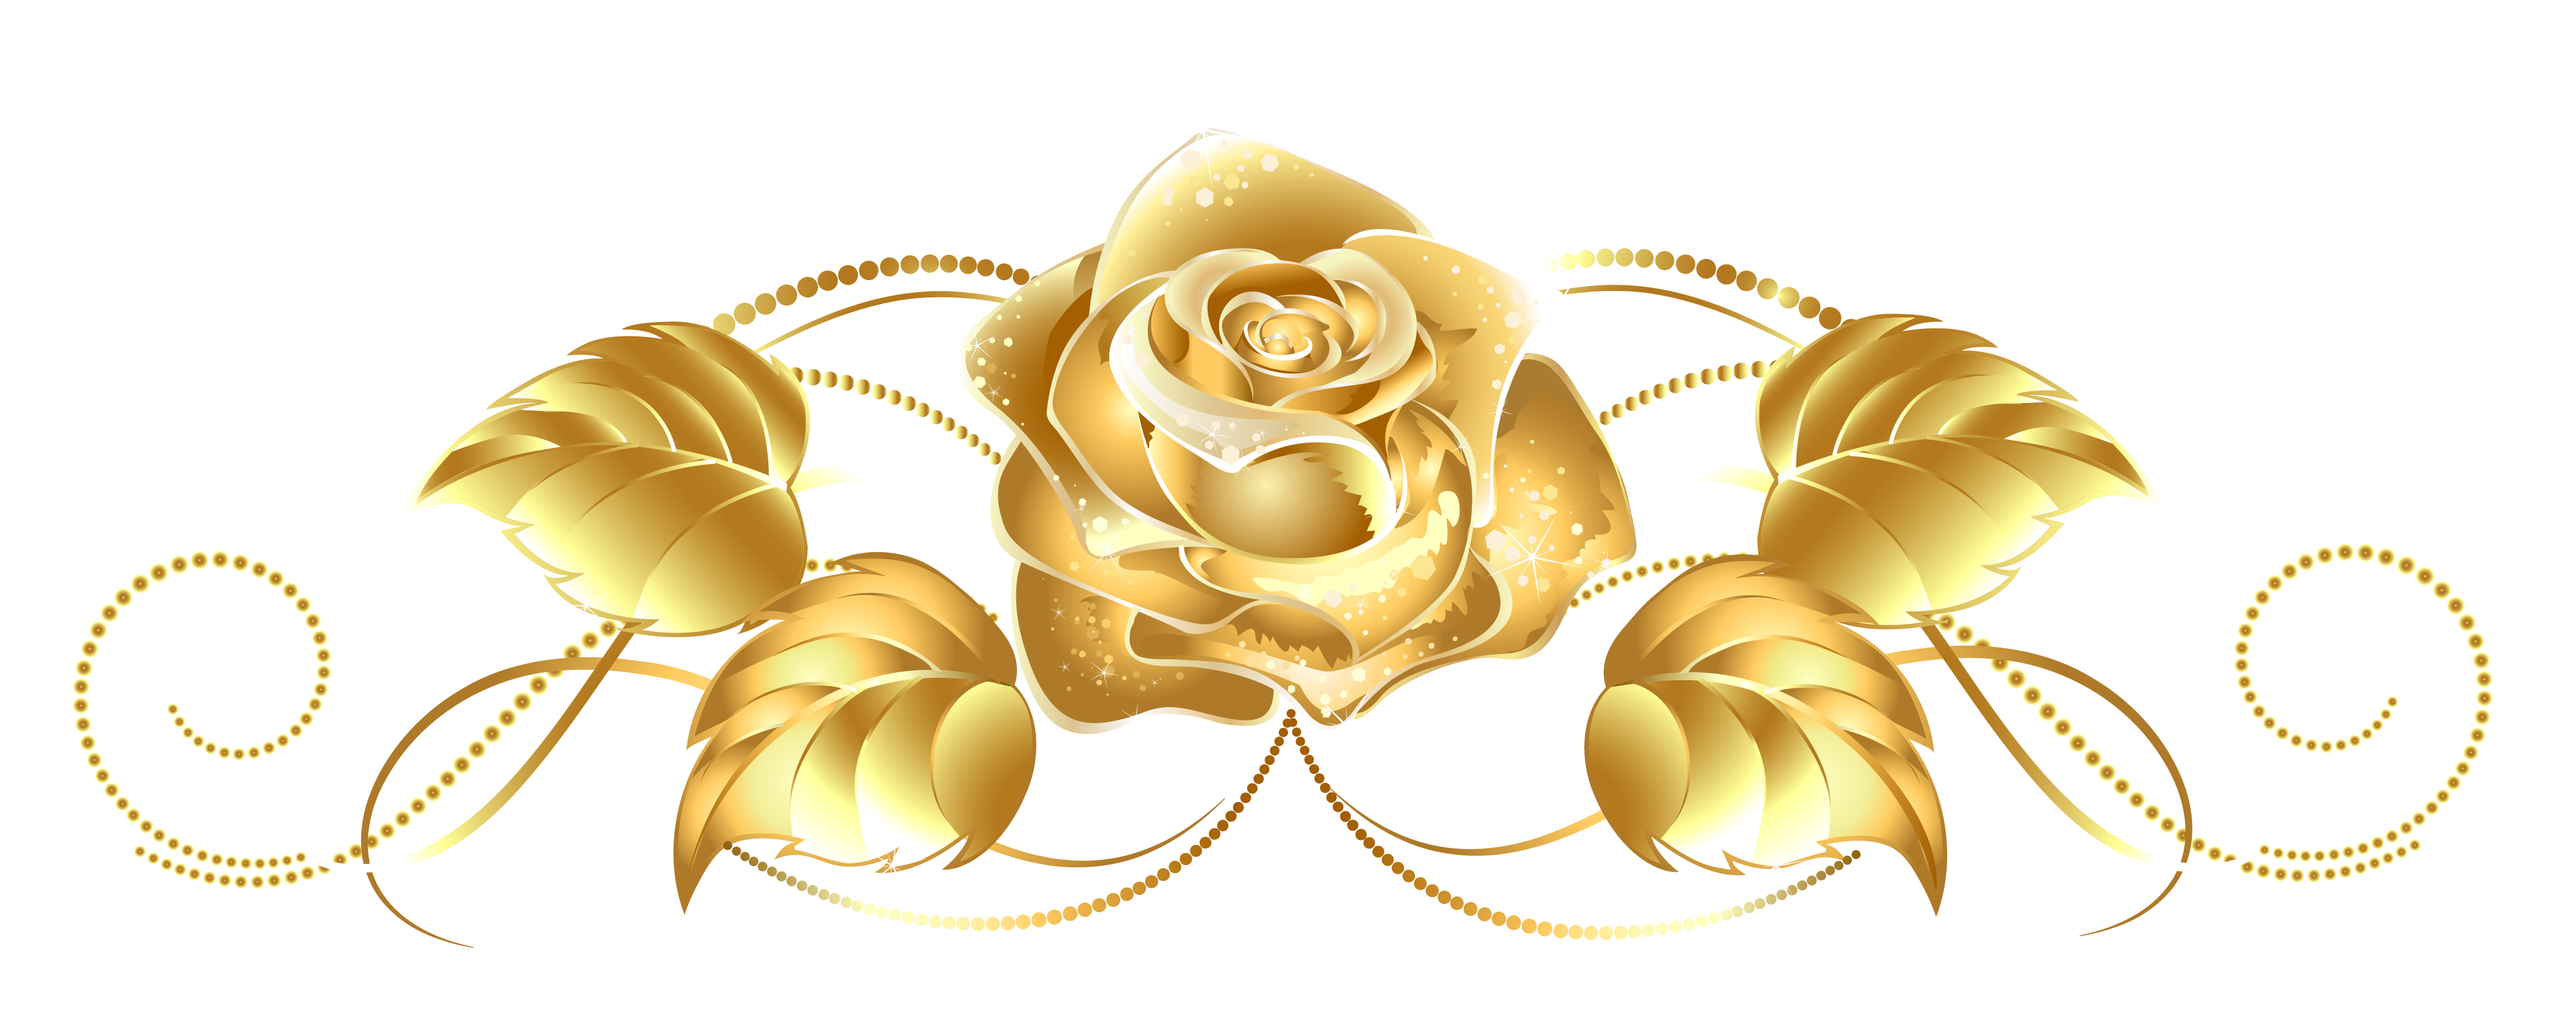 Золотая роза бесплатно PNG Image